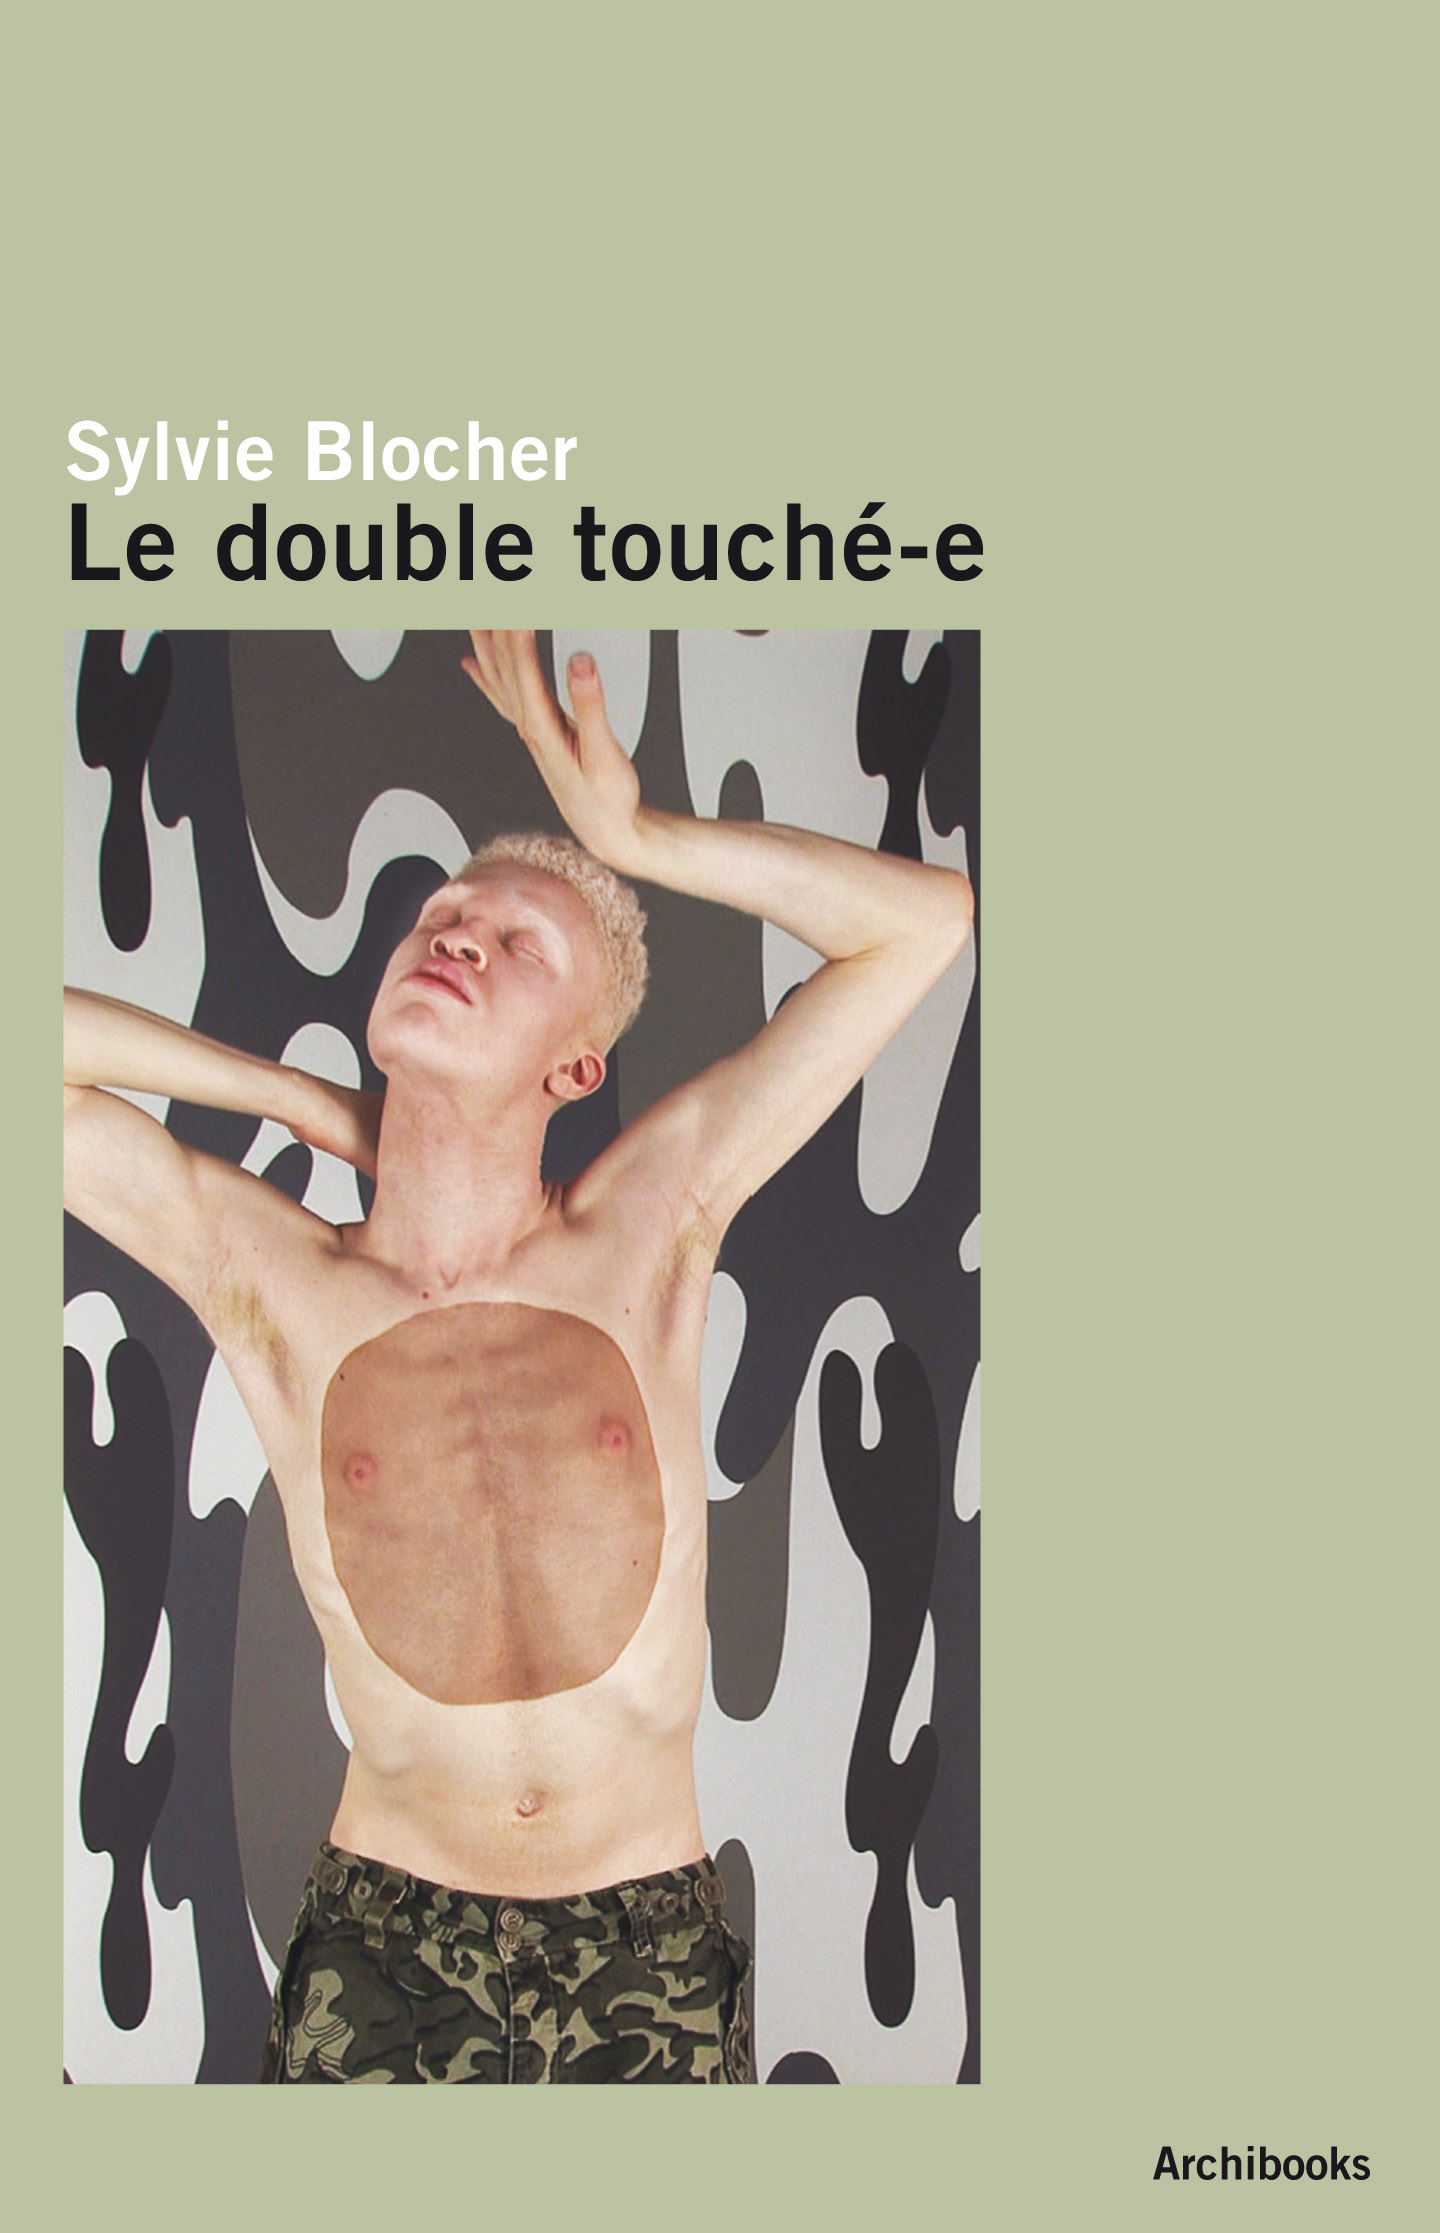 sylvie-blocher-le-double-touche-e-editions-archibooks-heteroclite.jpg